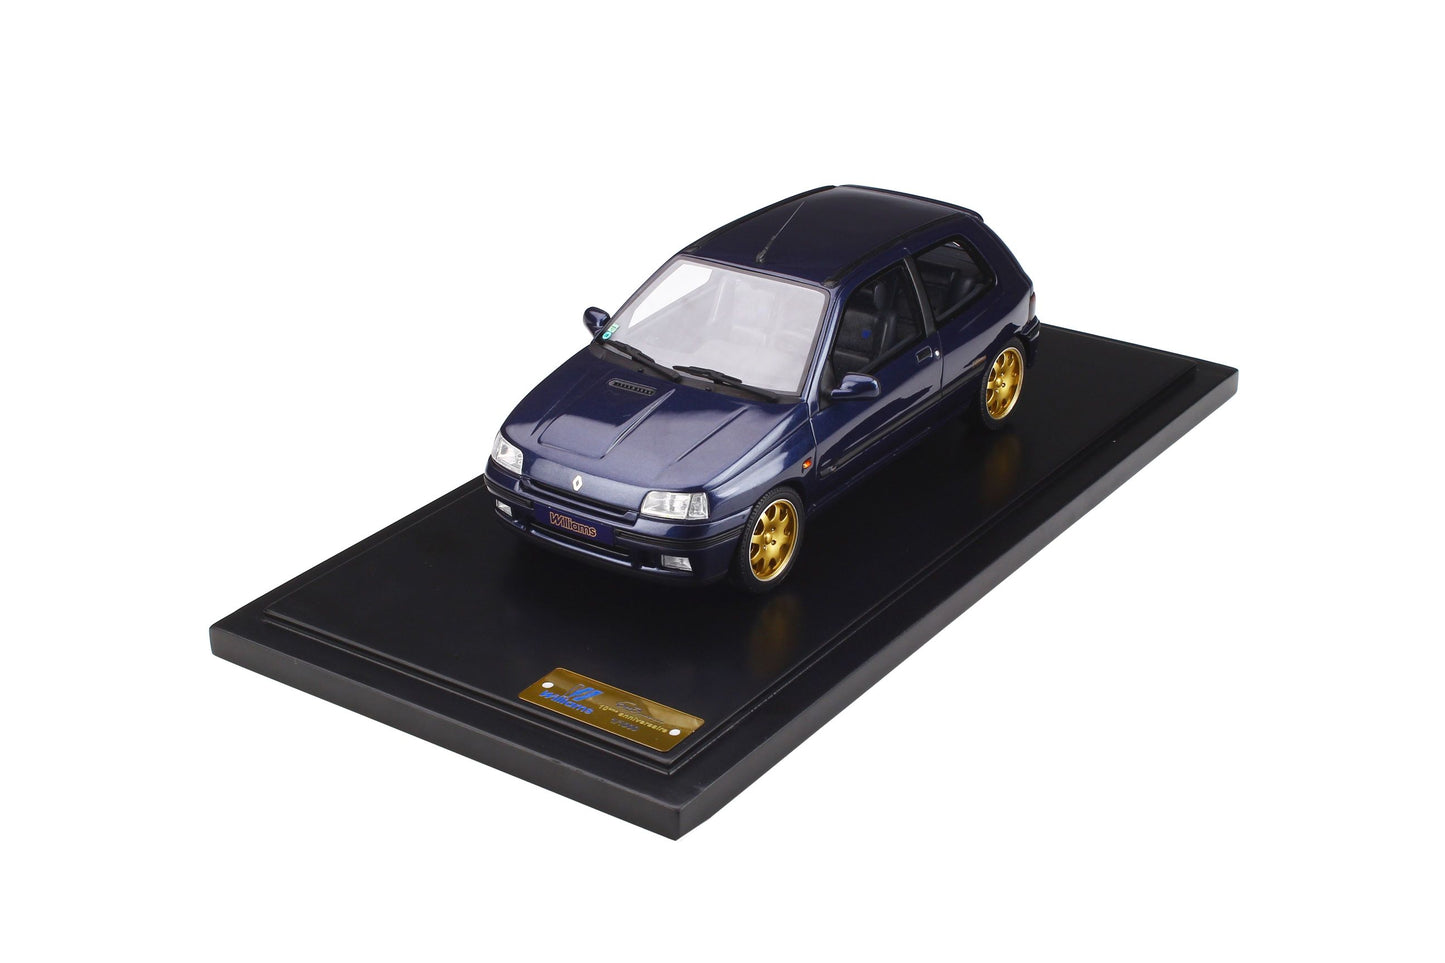 OttOmobile - Renault Clio Williams "OttOmobile 10th Anniversary Edition" (Blue) 1:18 Scale Model Car